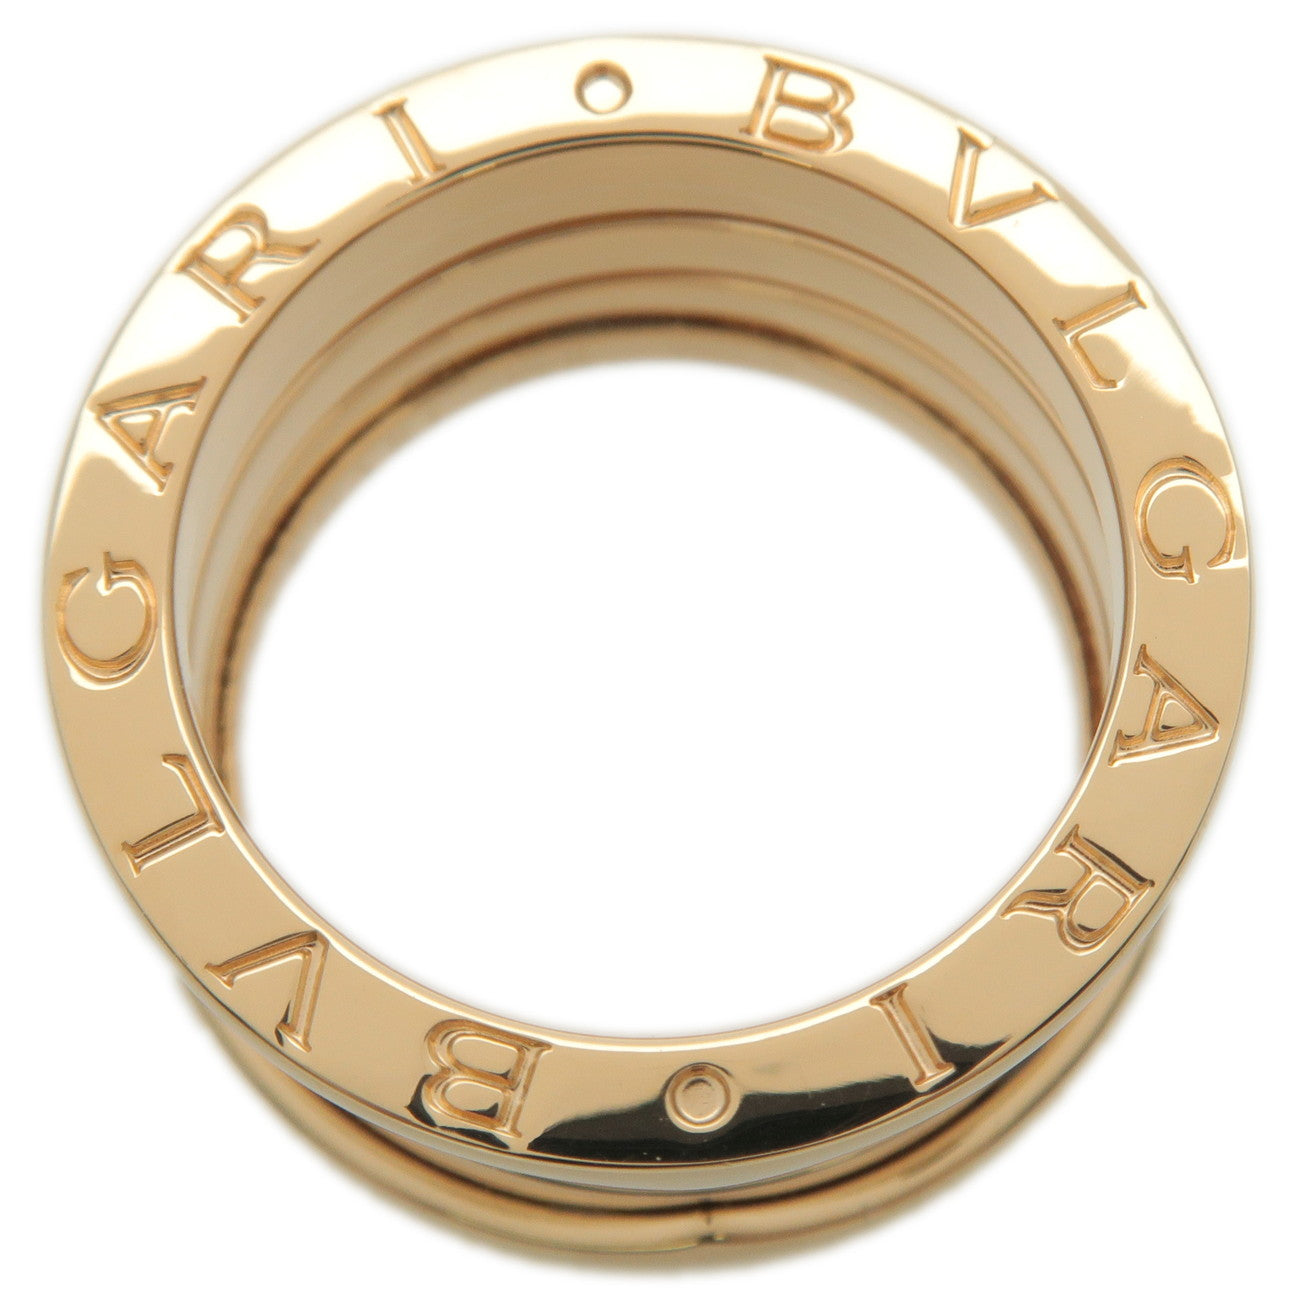 BVLGARI B-Zero1 Ring 3 Band K18 750 Yellow Gold #51 US5.5-6